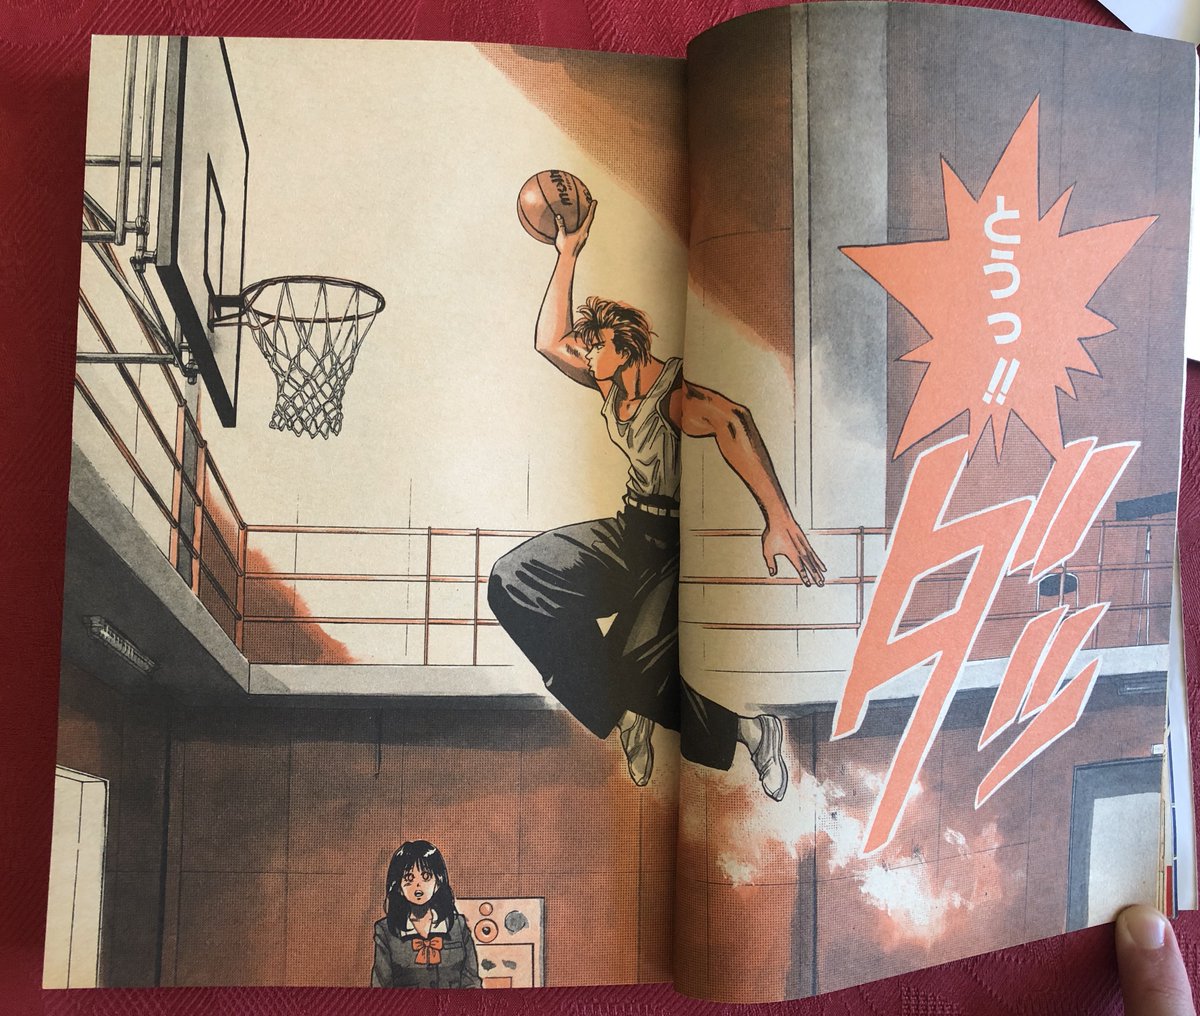 Slam Dunk débute en octobre, dans le numéro 42 de 1990. Ce succès mondial, toujours classé dans les 10 mangas les mieux vendus de l'histoire (!), sera l'un des "trois piliers" du Jump durant les années 1990, portant le magazine a des sommets jamais vus depuis dans l'industrie.